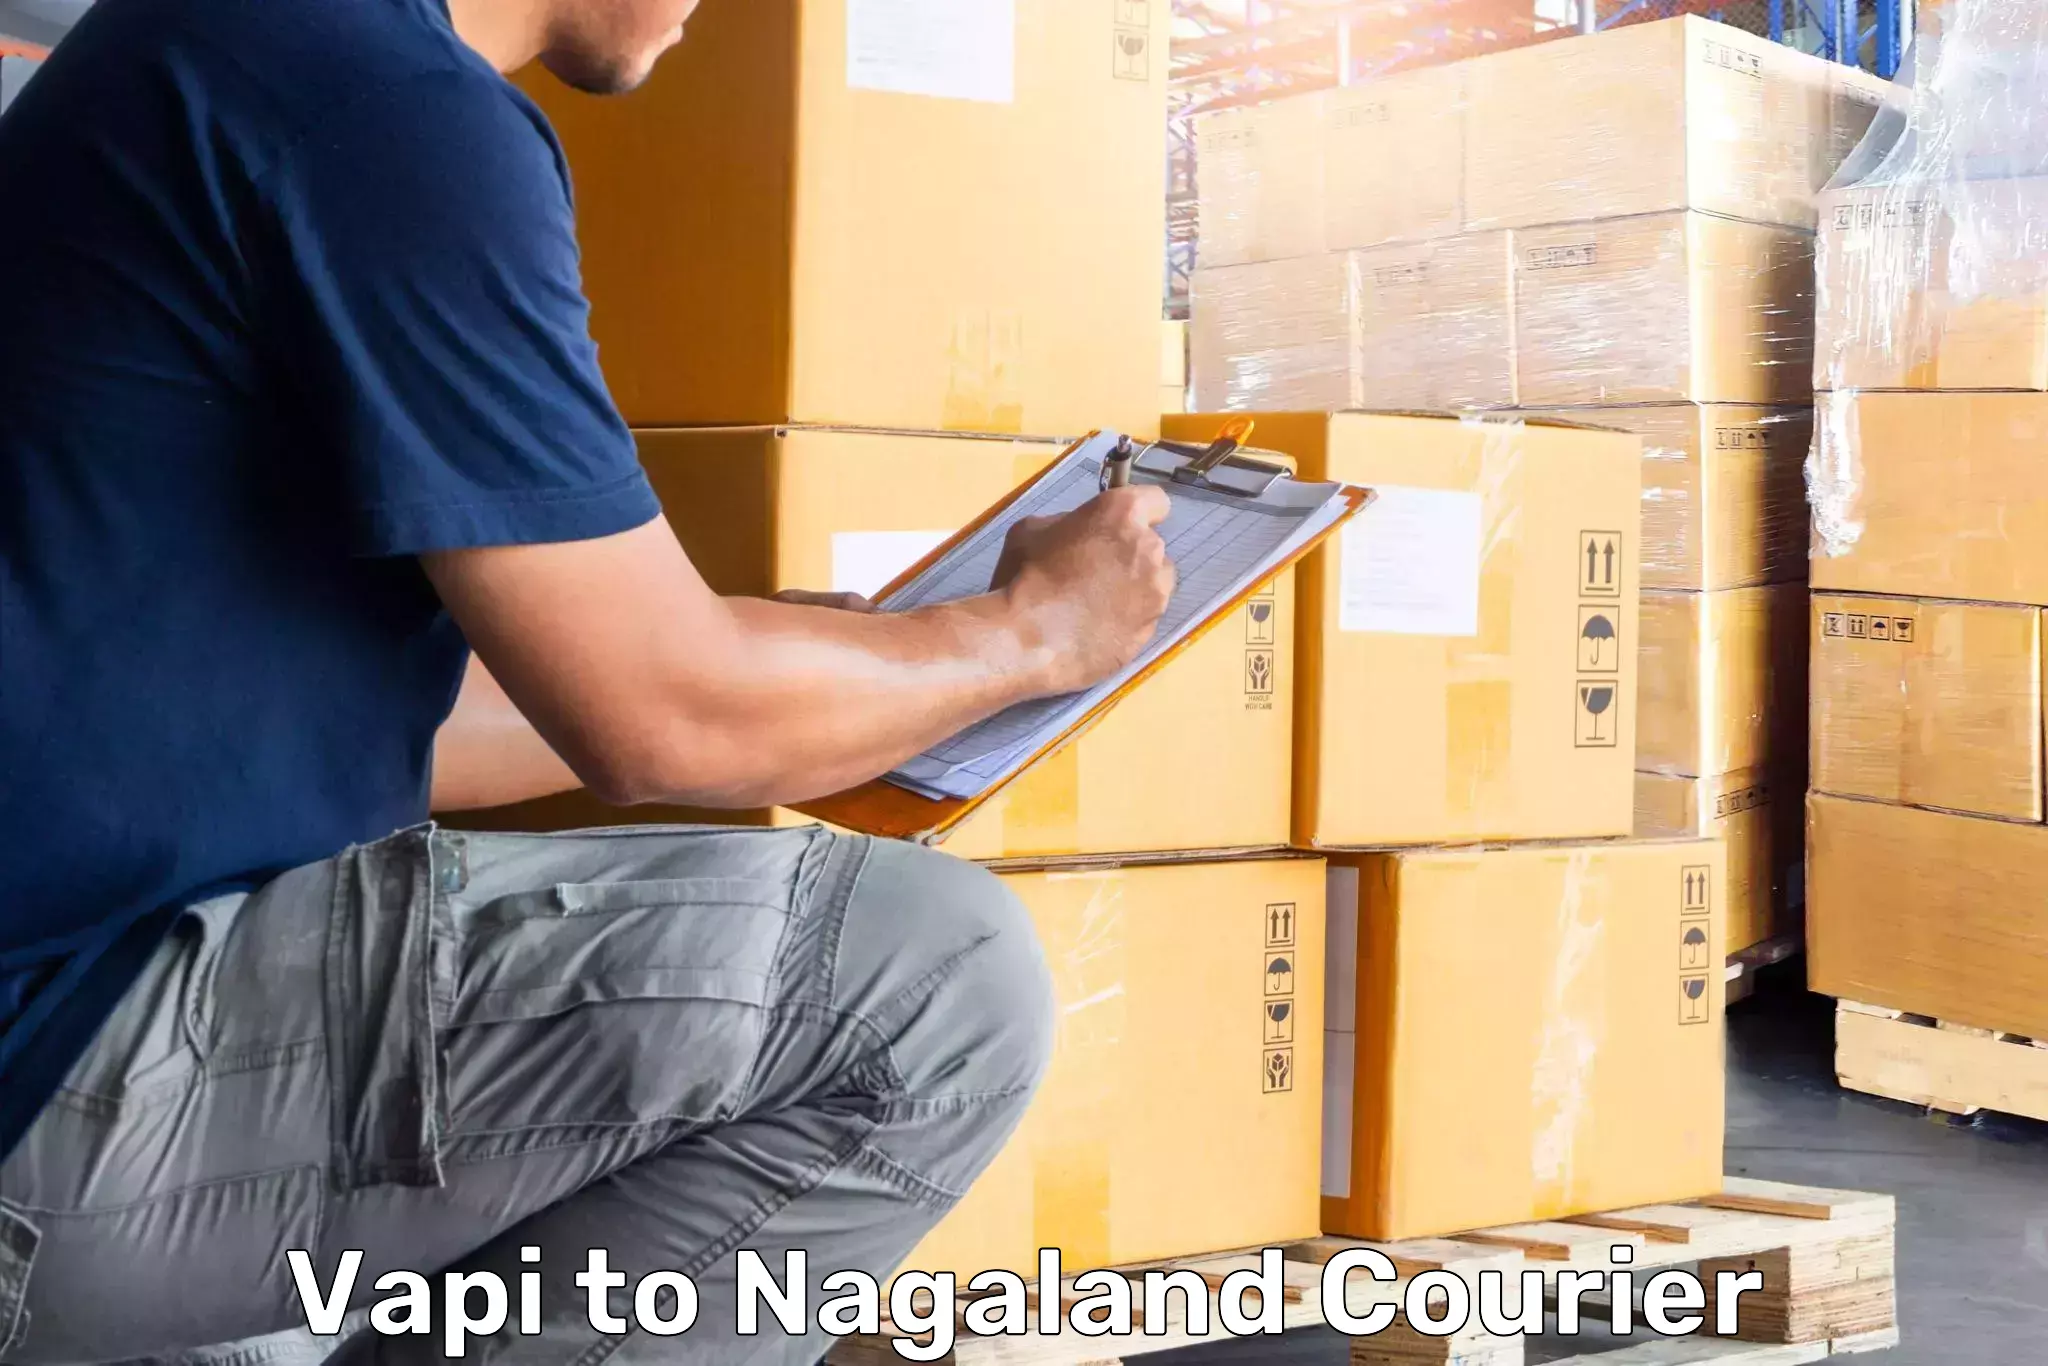 Luggage transport company Vapi to Nagaland